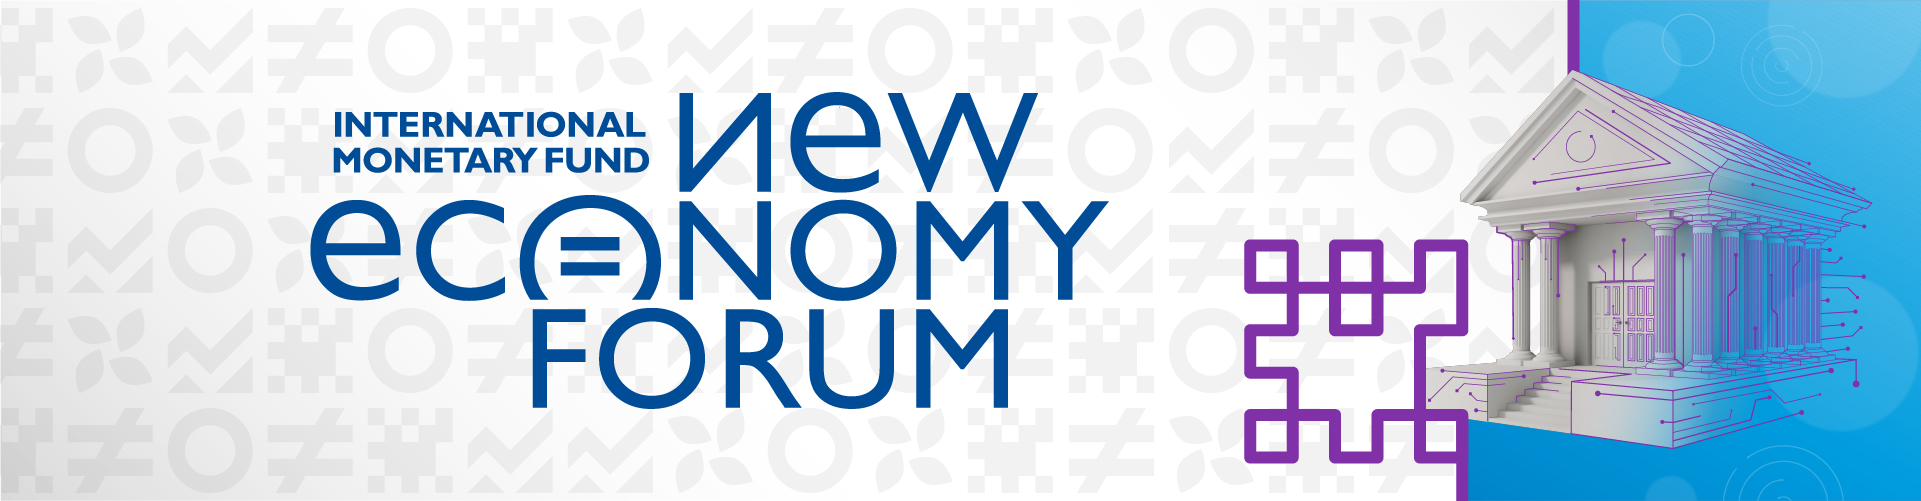 New Economy Forum